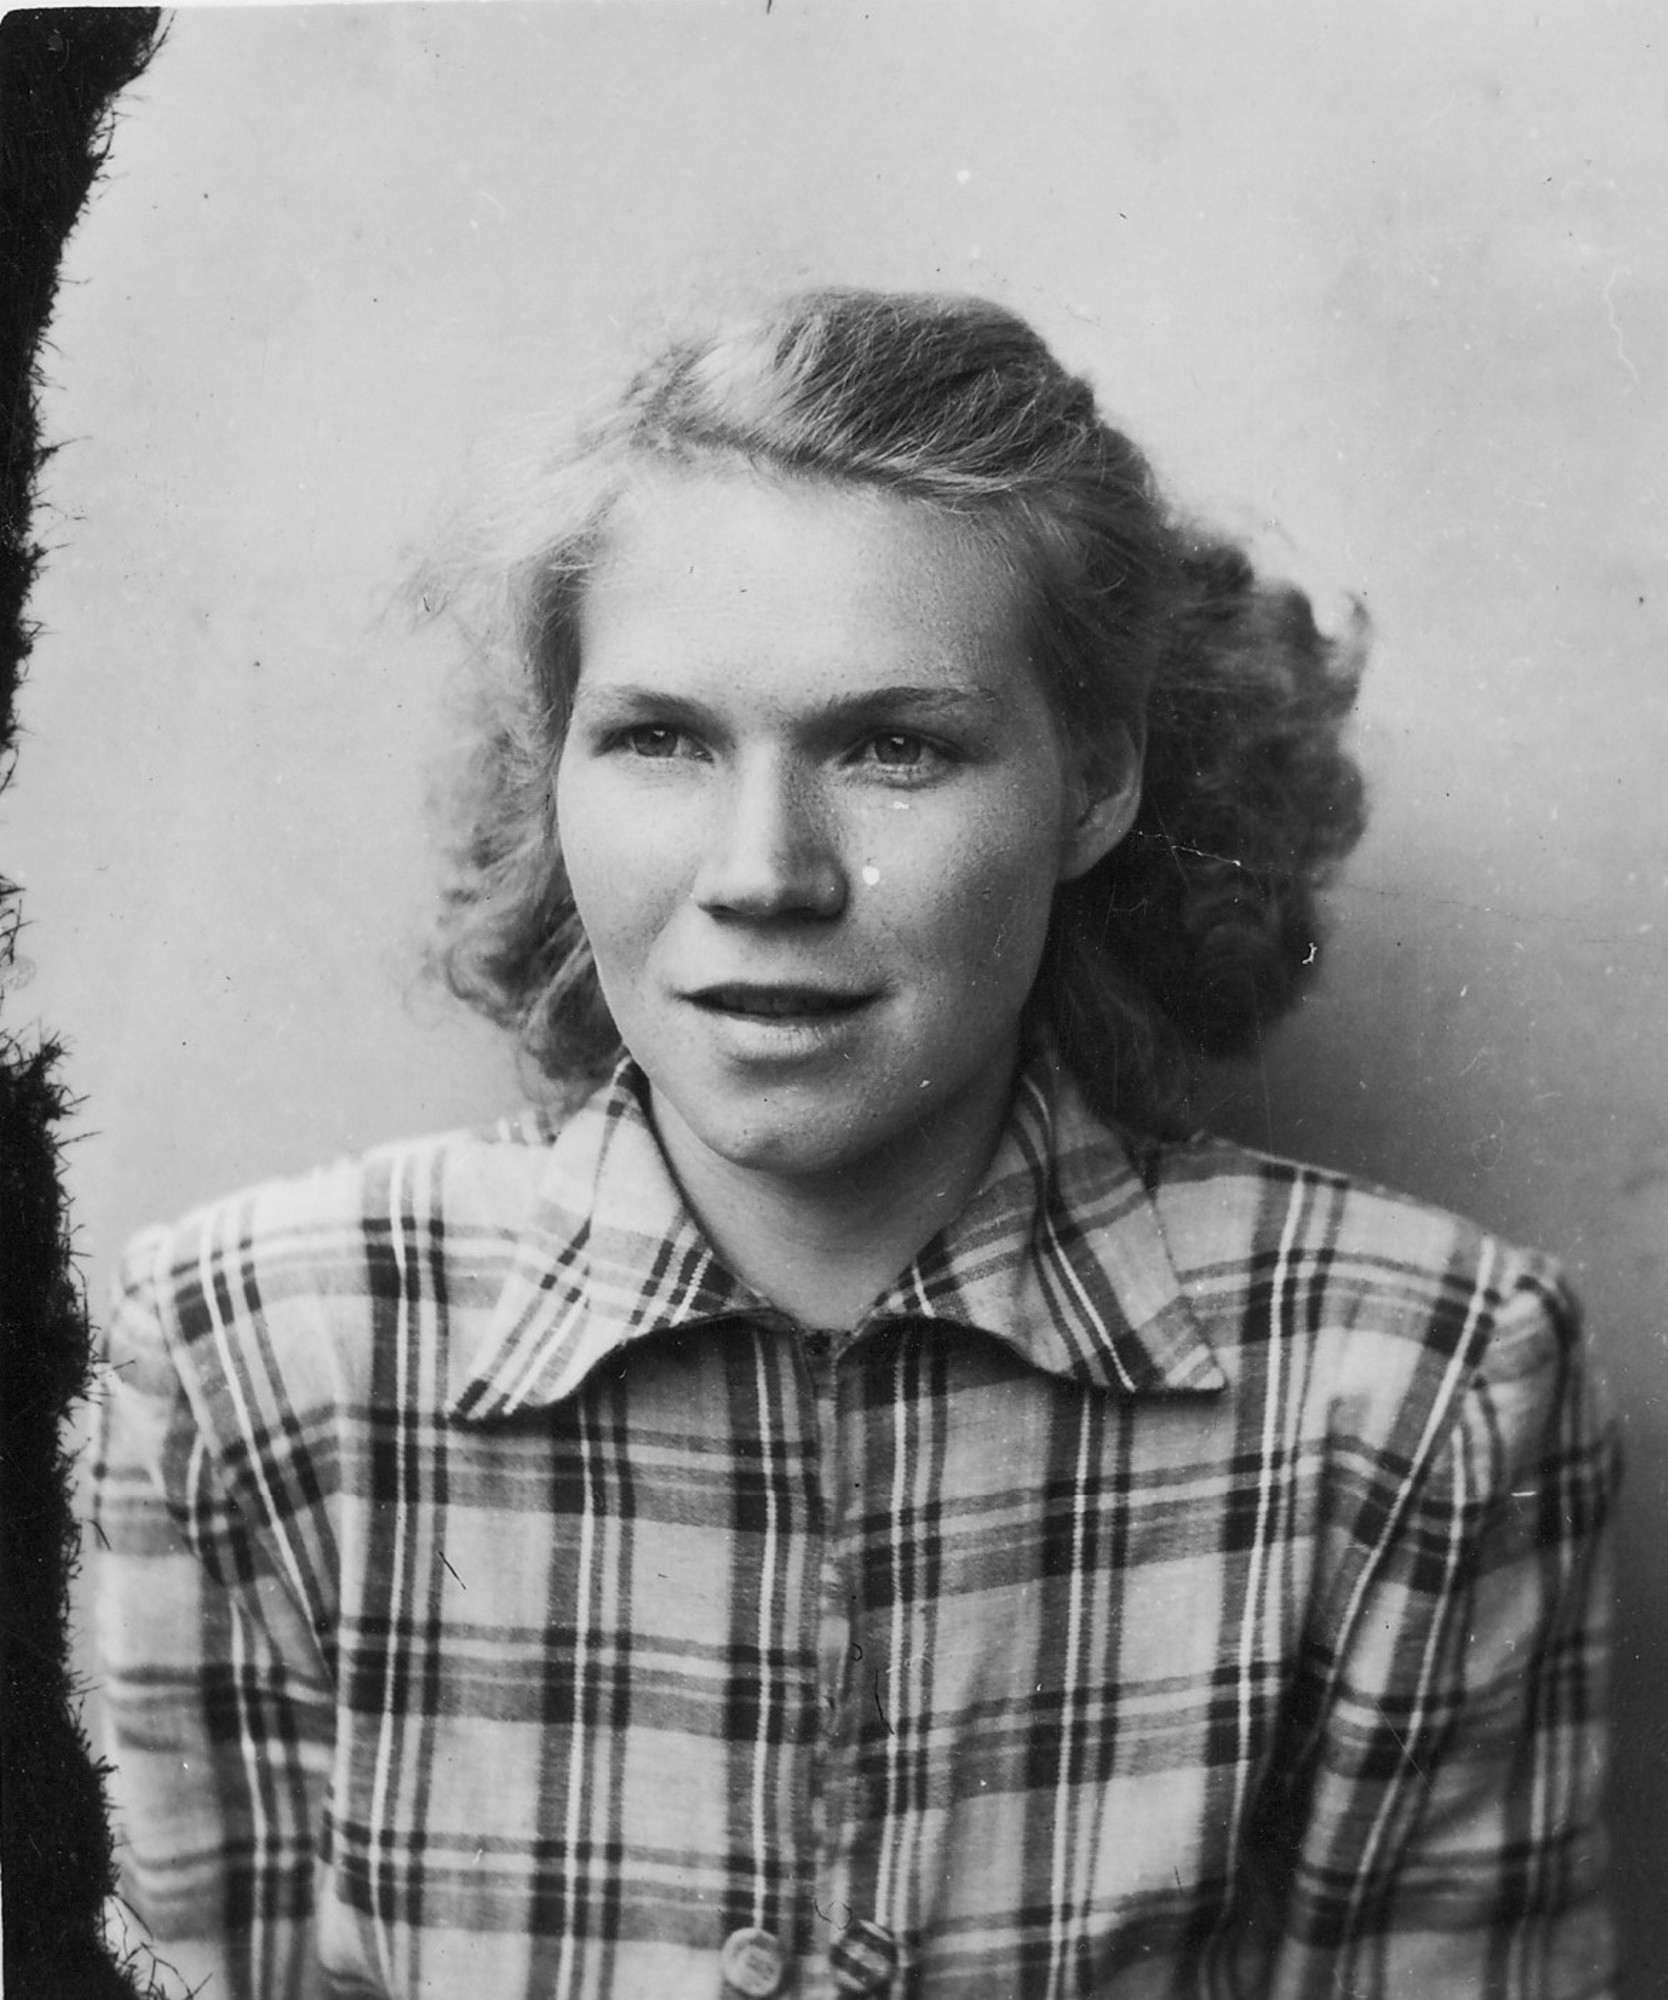 Erika Bednářová (Rotterová) in 1955